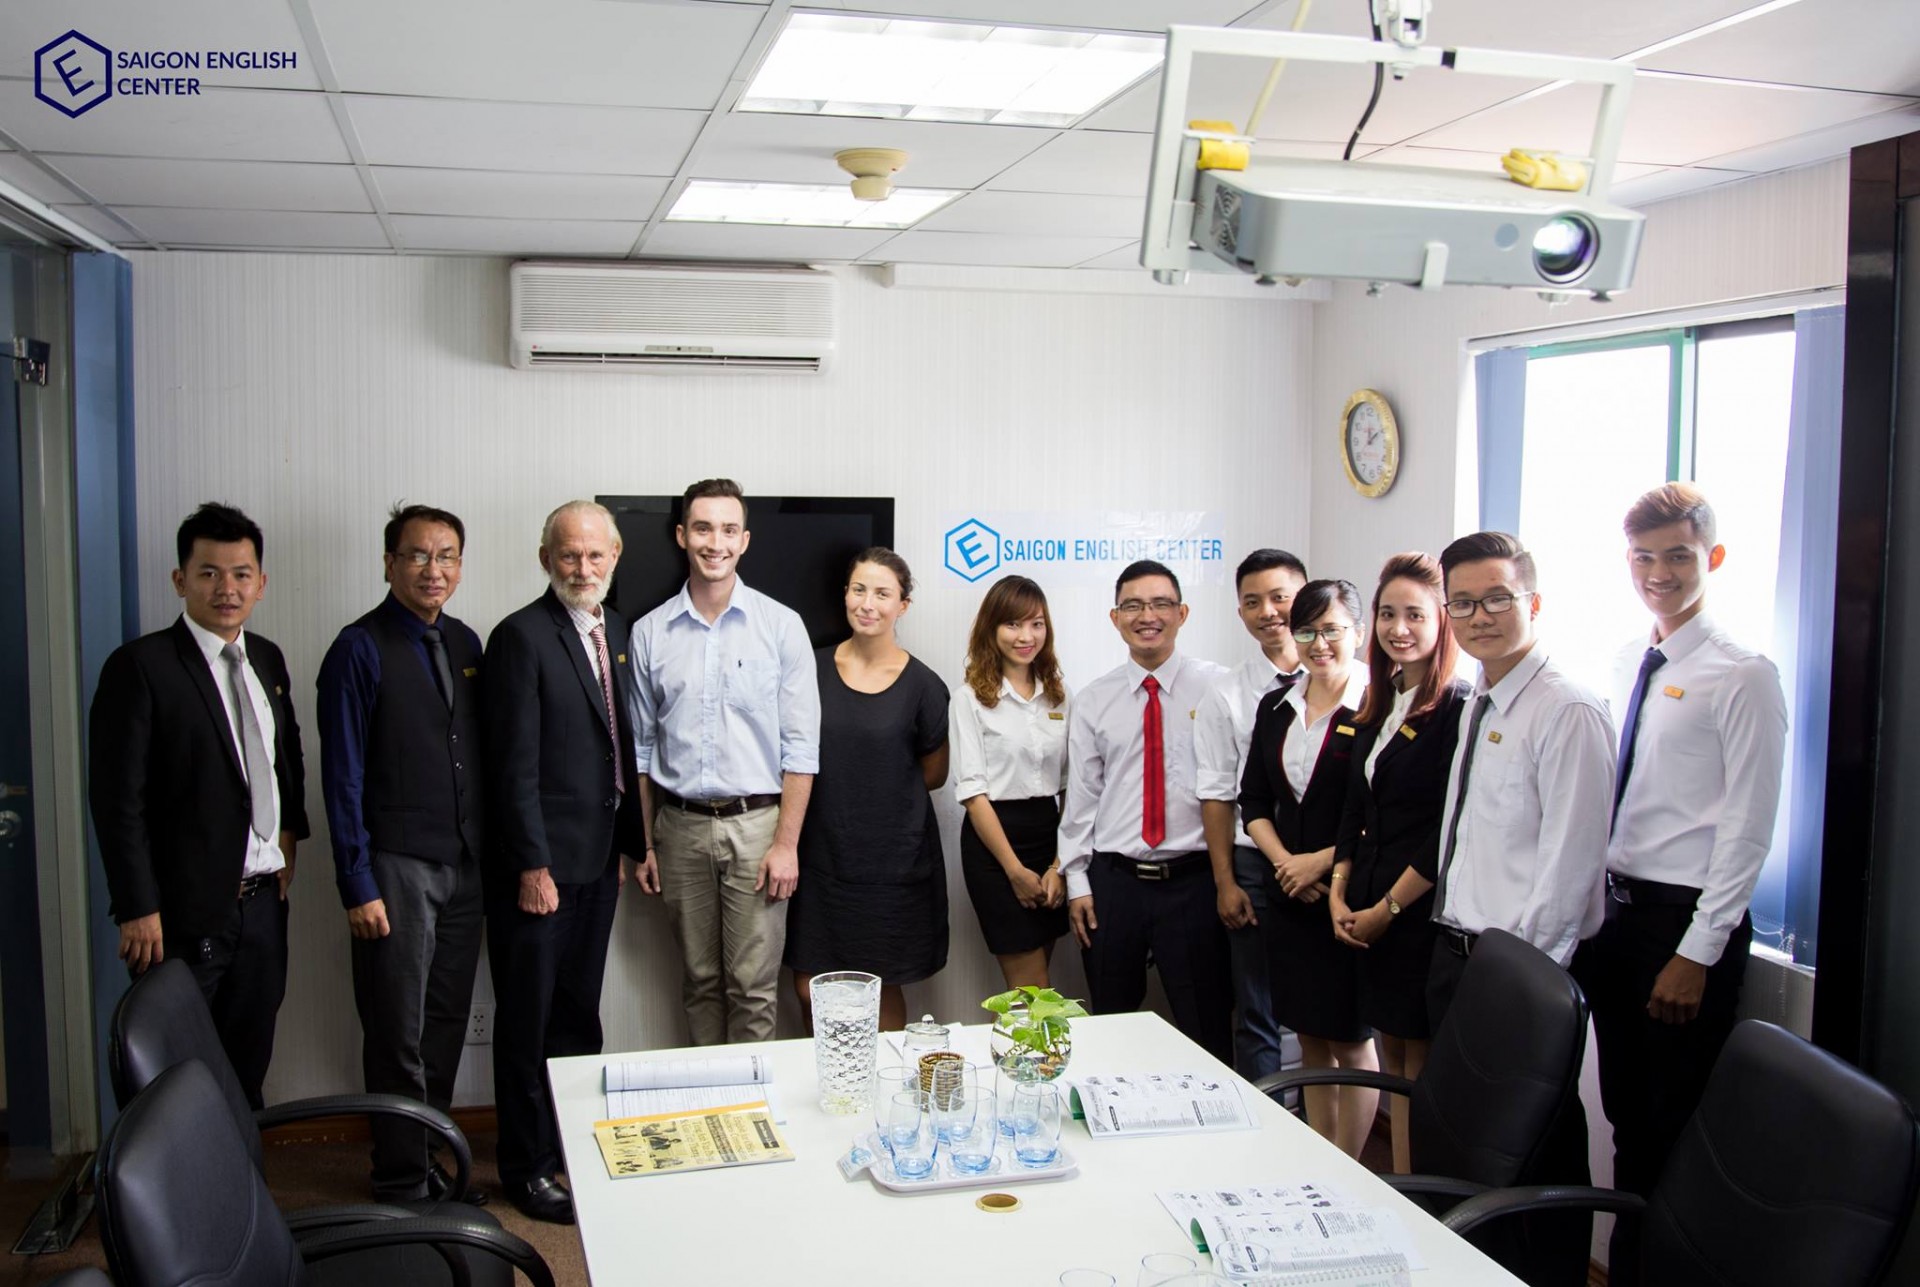 Saigon English Center Thủ Đức liệu có phù hợp với sinh viên?